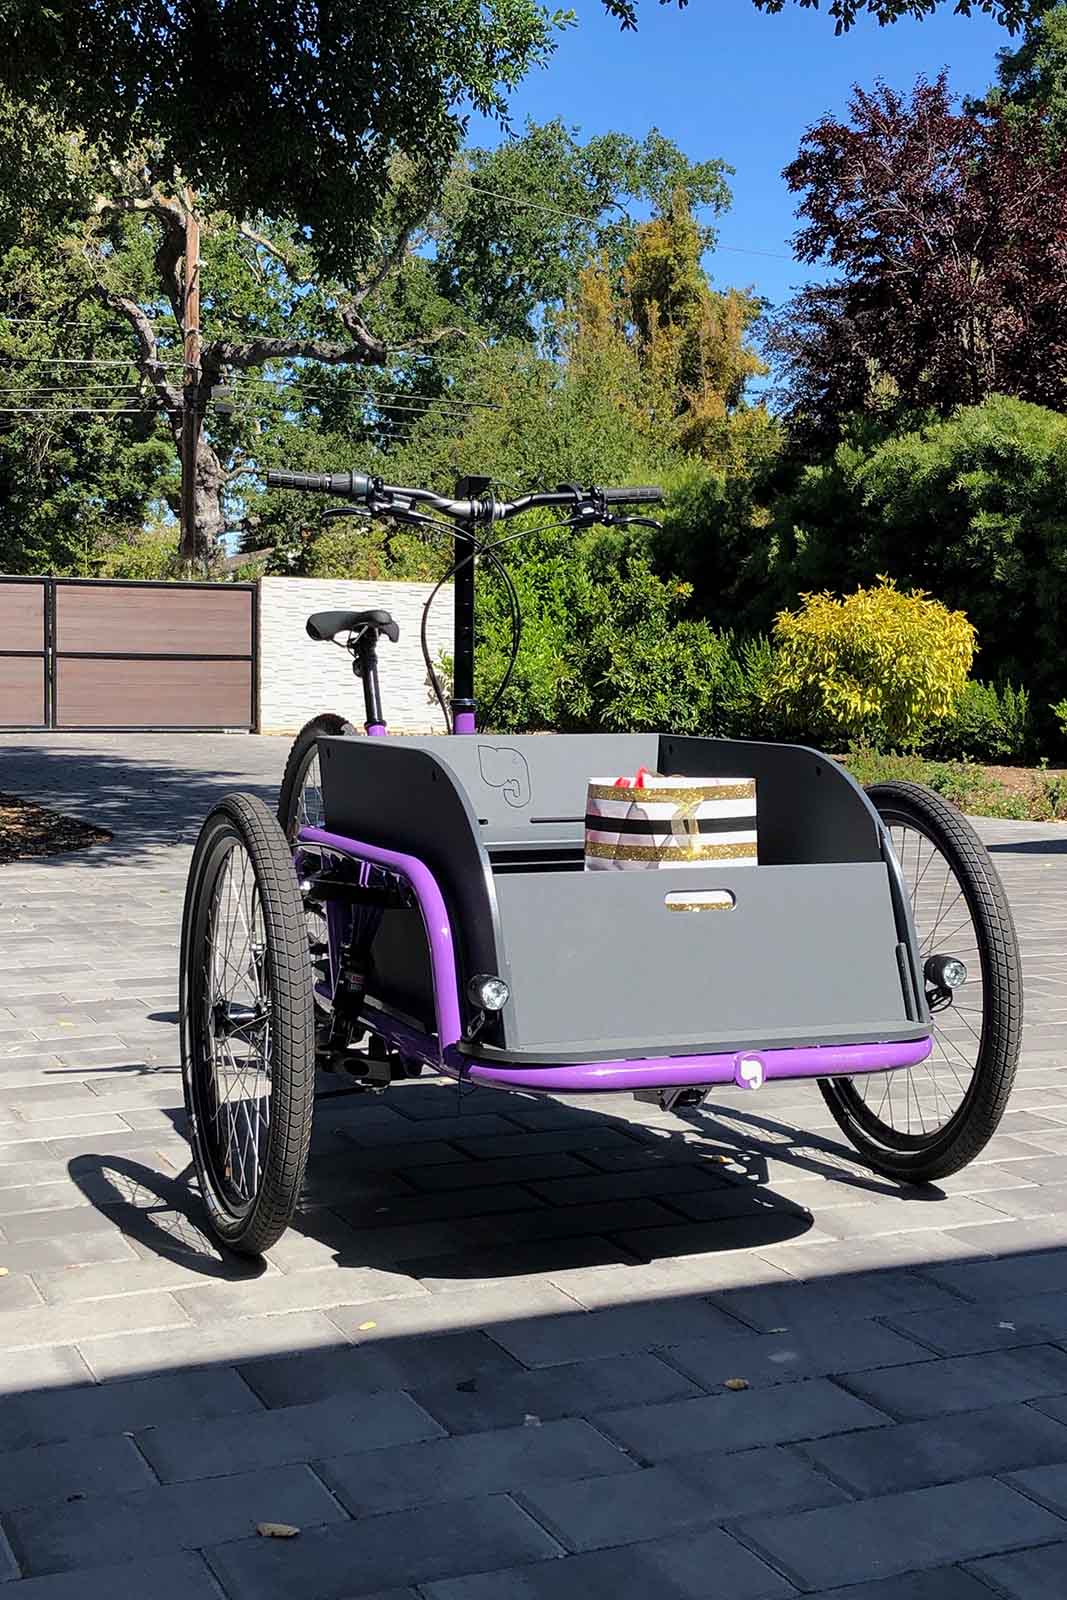 A purple olivetti cargo bike